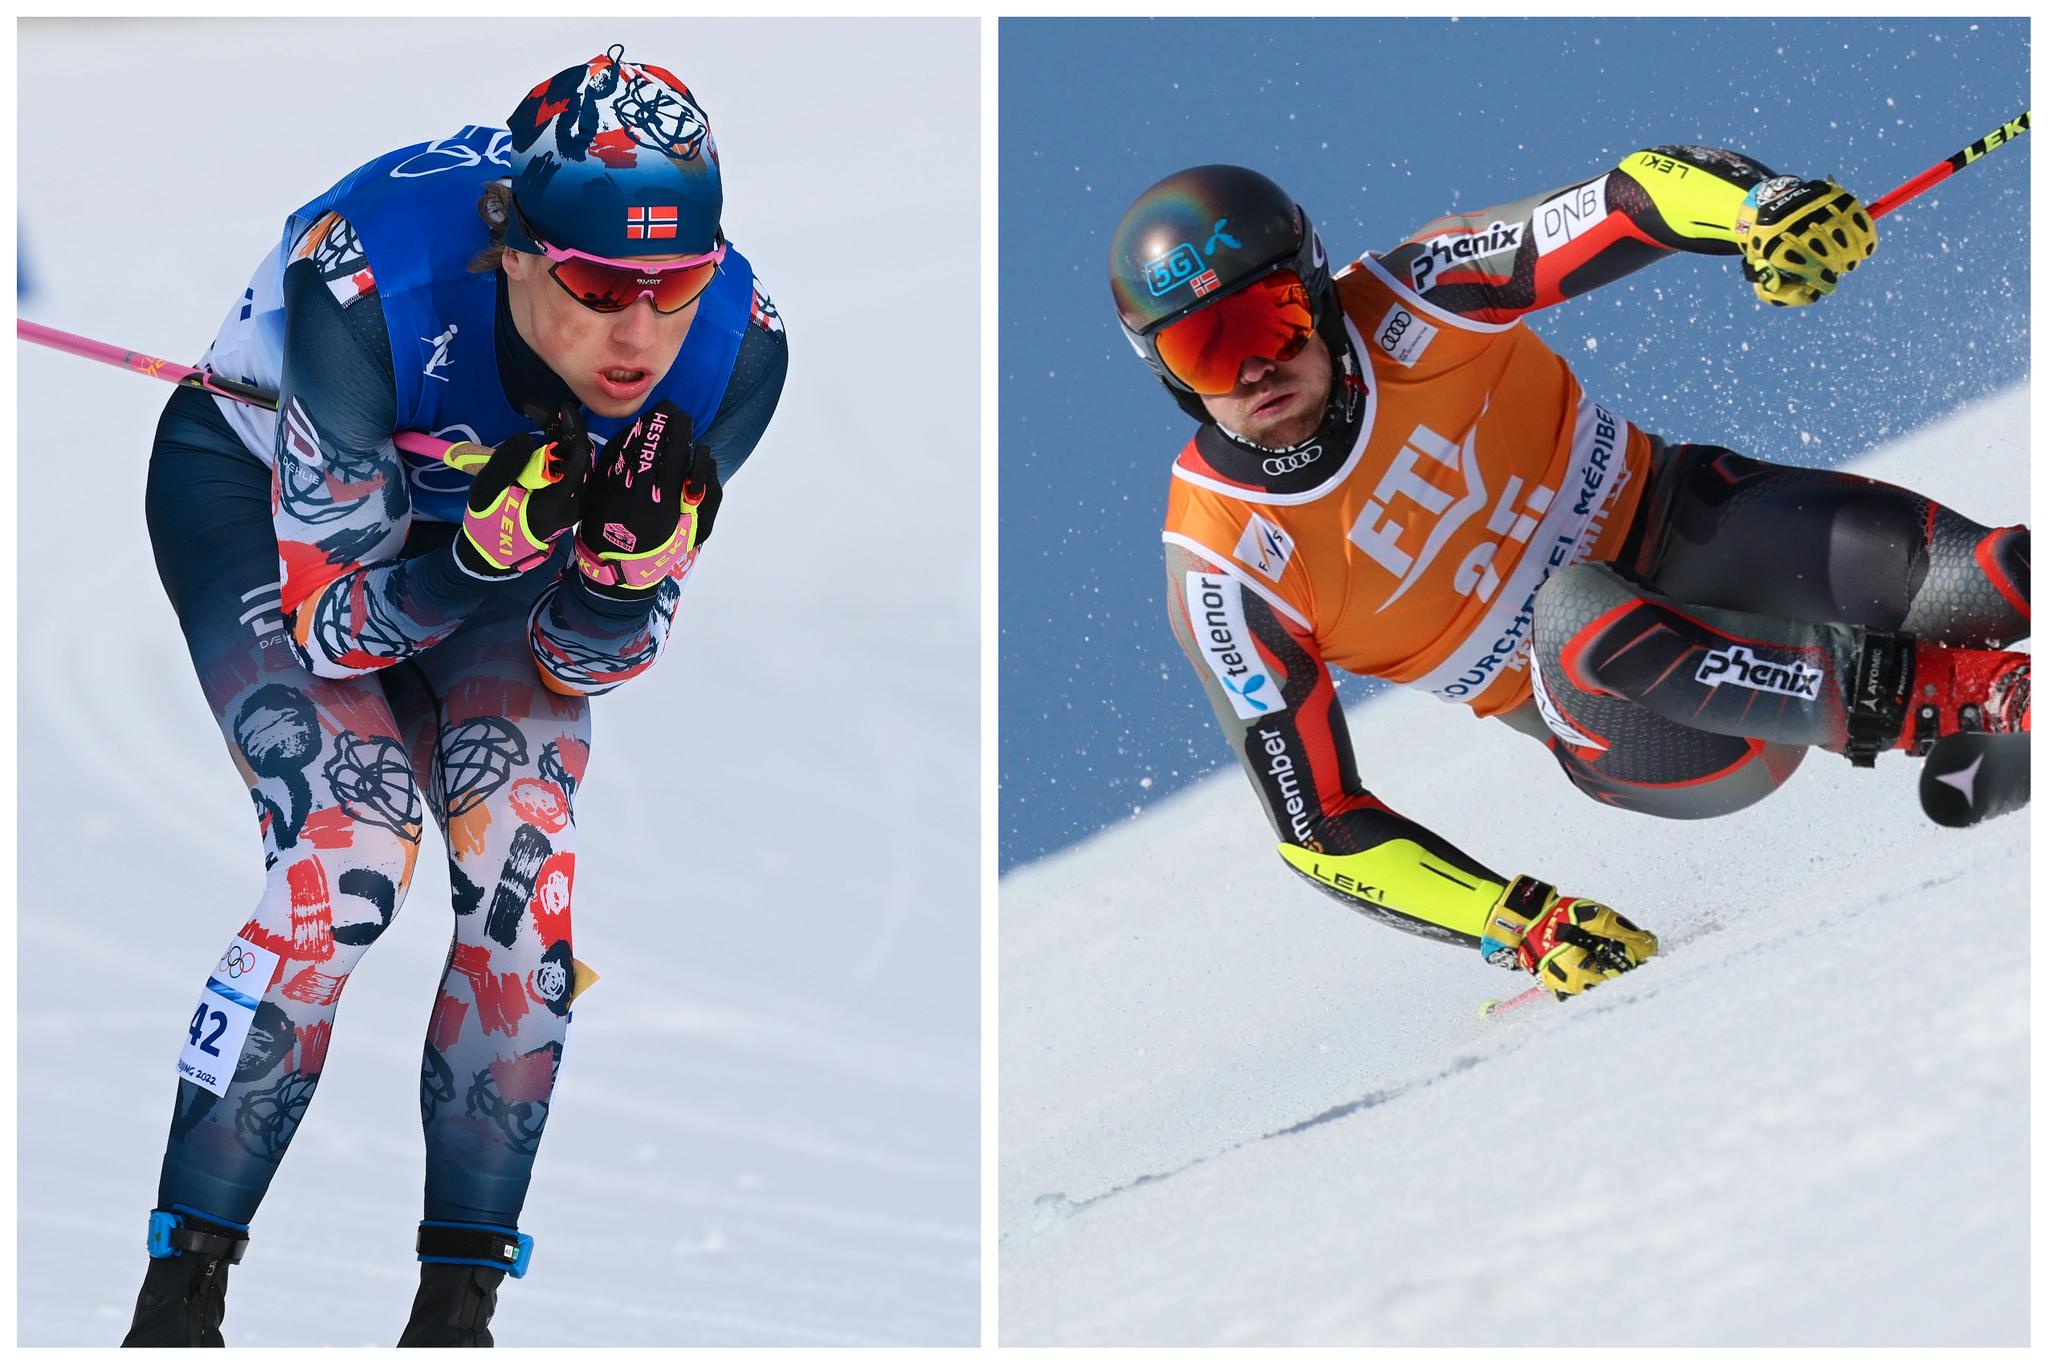 PÅ SAMME STED: Alpin-VM og ski-VM i nordiske grener har vært separerte mesterskap tidligere. Nå blir det felles VM-by på Johannes Høsflot Klæbo og Aleksander Aamodt Kilde.